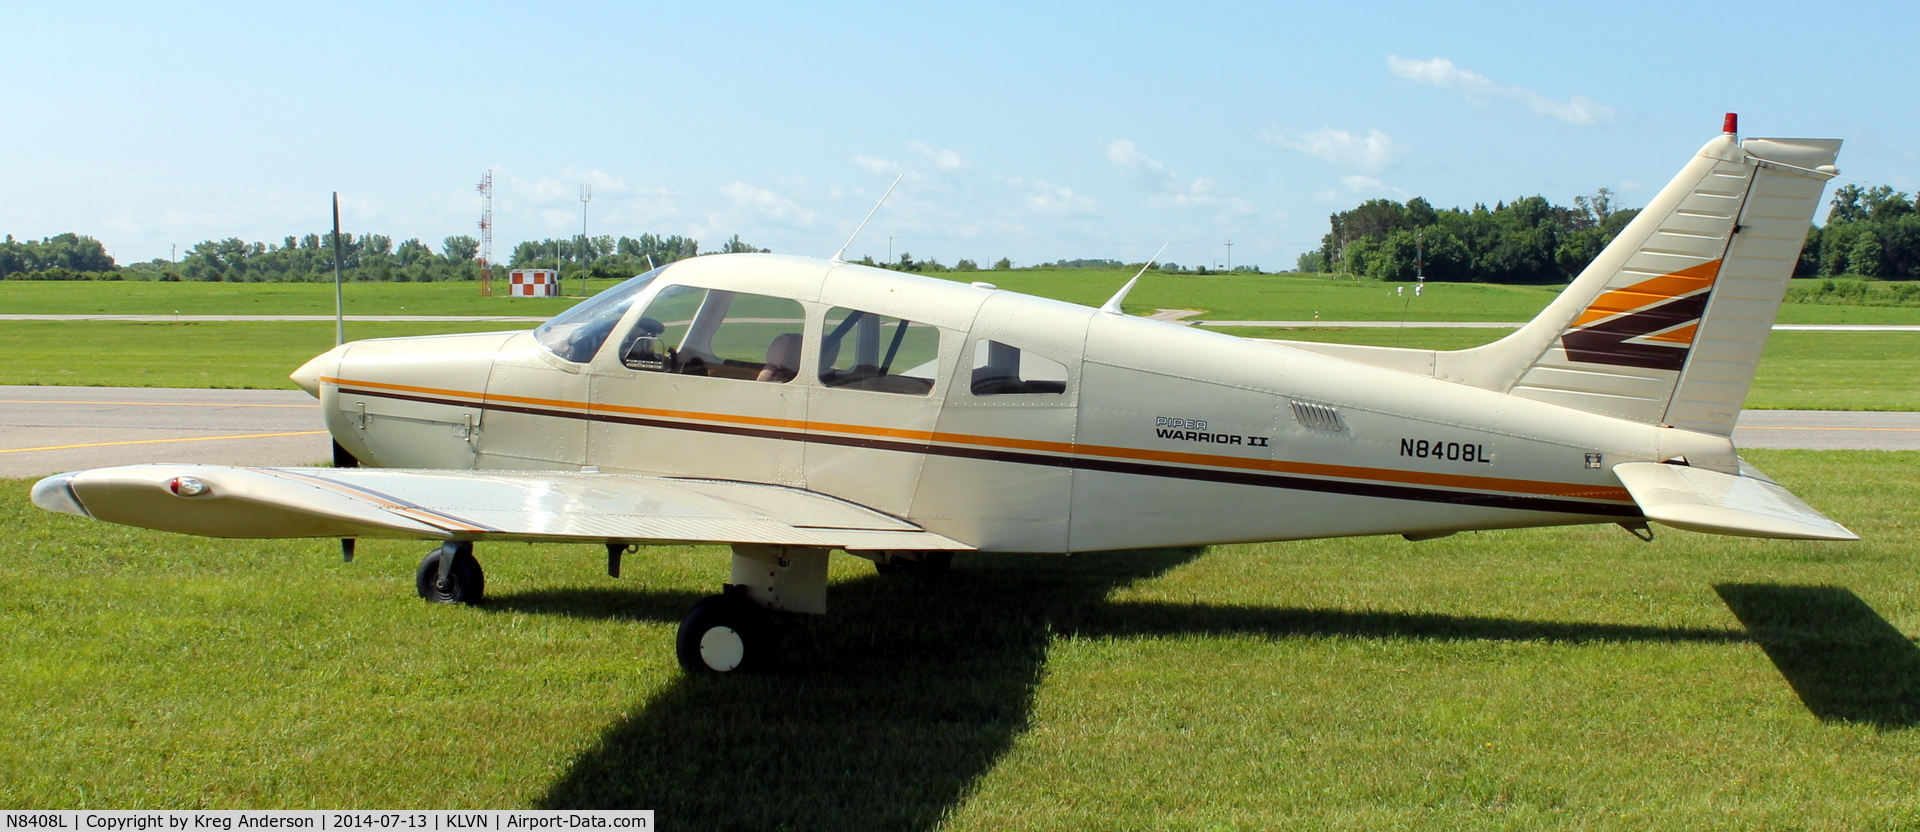 N8408L, 1981 Piper PA-28-161 Cherokee Warrior II C/N 28-8116261, 2014 Airlake Fly-in Breakfast